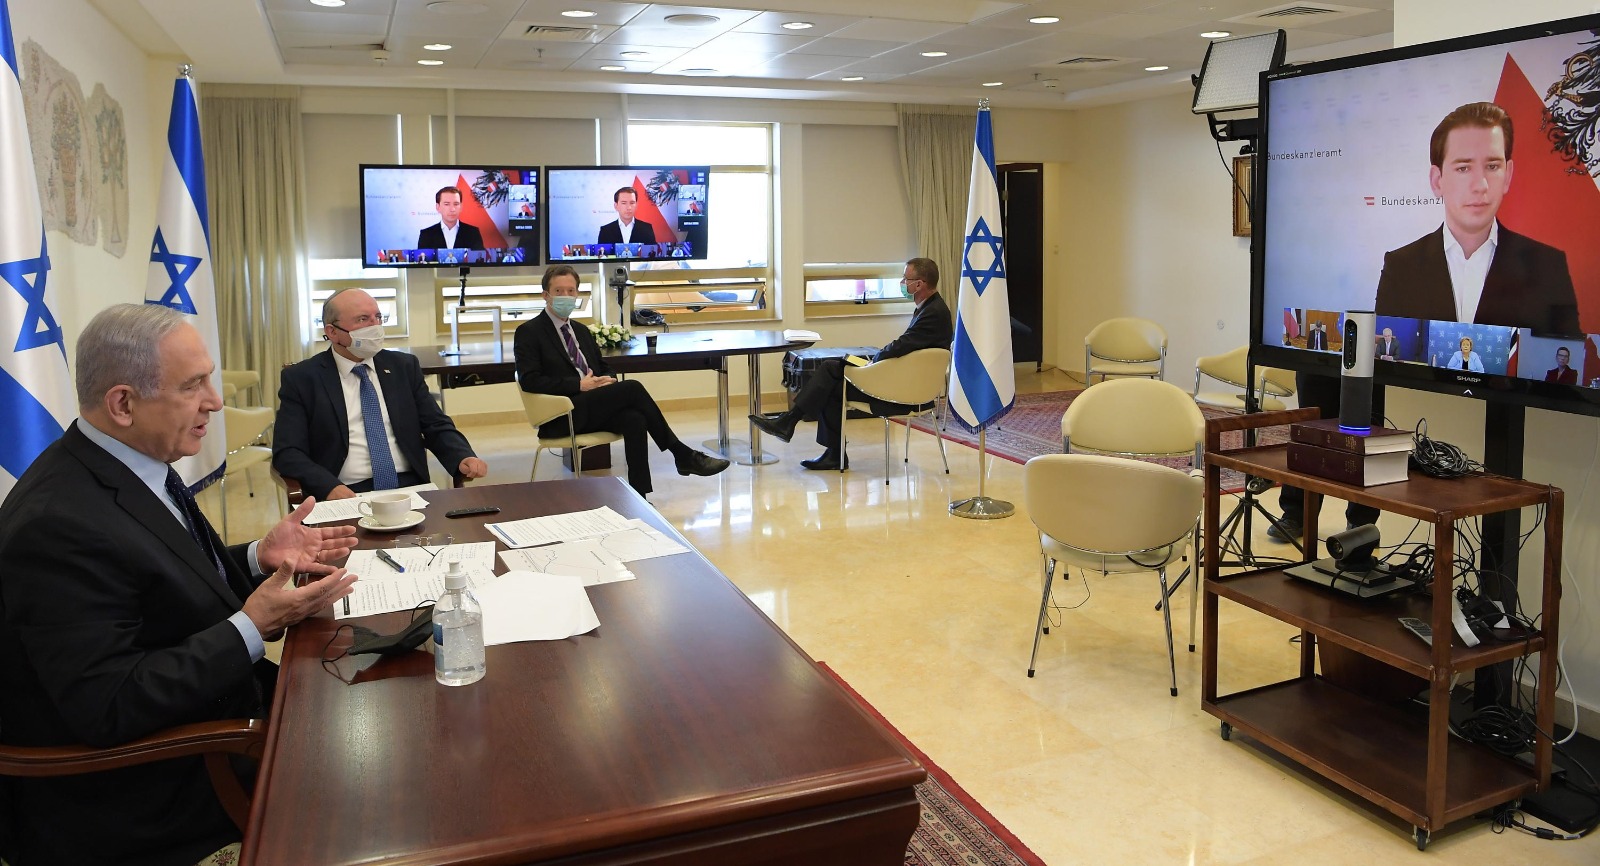 ראש הממשלה בשיחה עם המנהיגים: צילום עמוס בן גרשון לע"מ